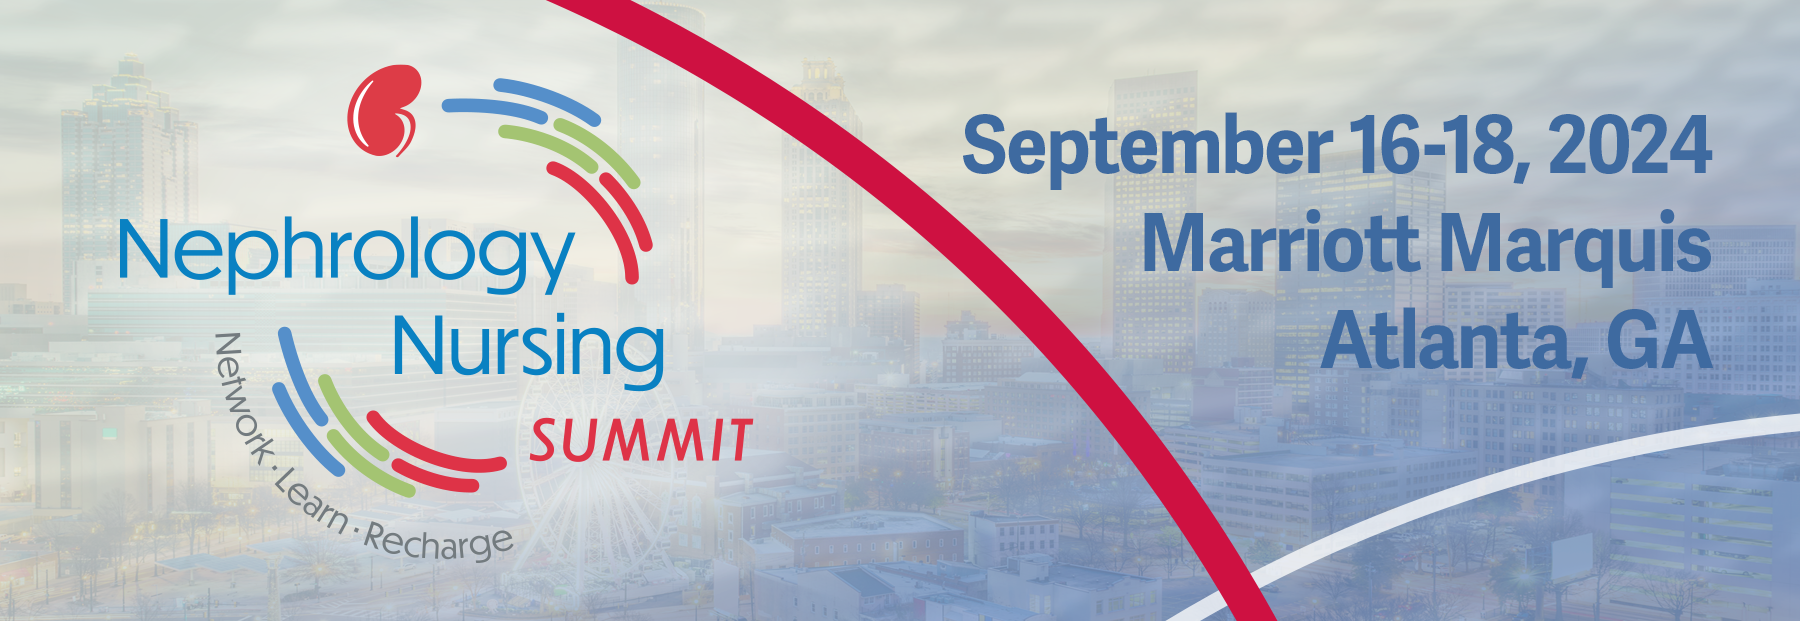 Nephrology Nursing Summit, September 16-18, 2024, Marriott Marquis, Atlanta, GA